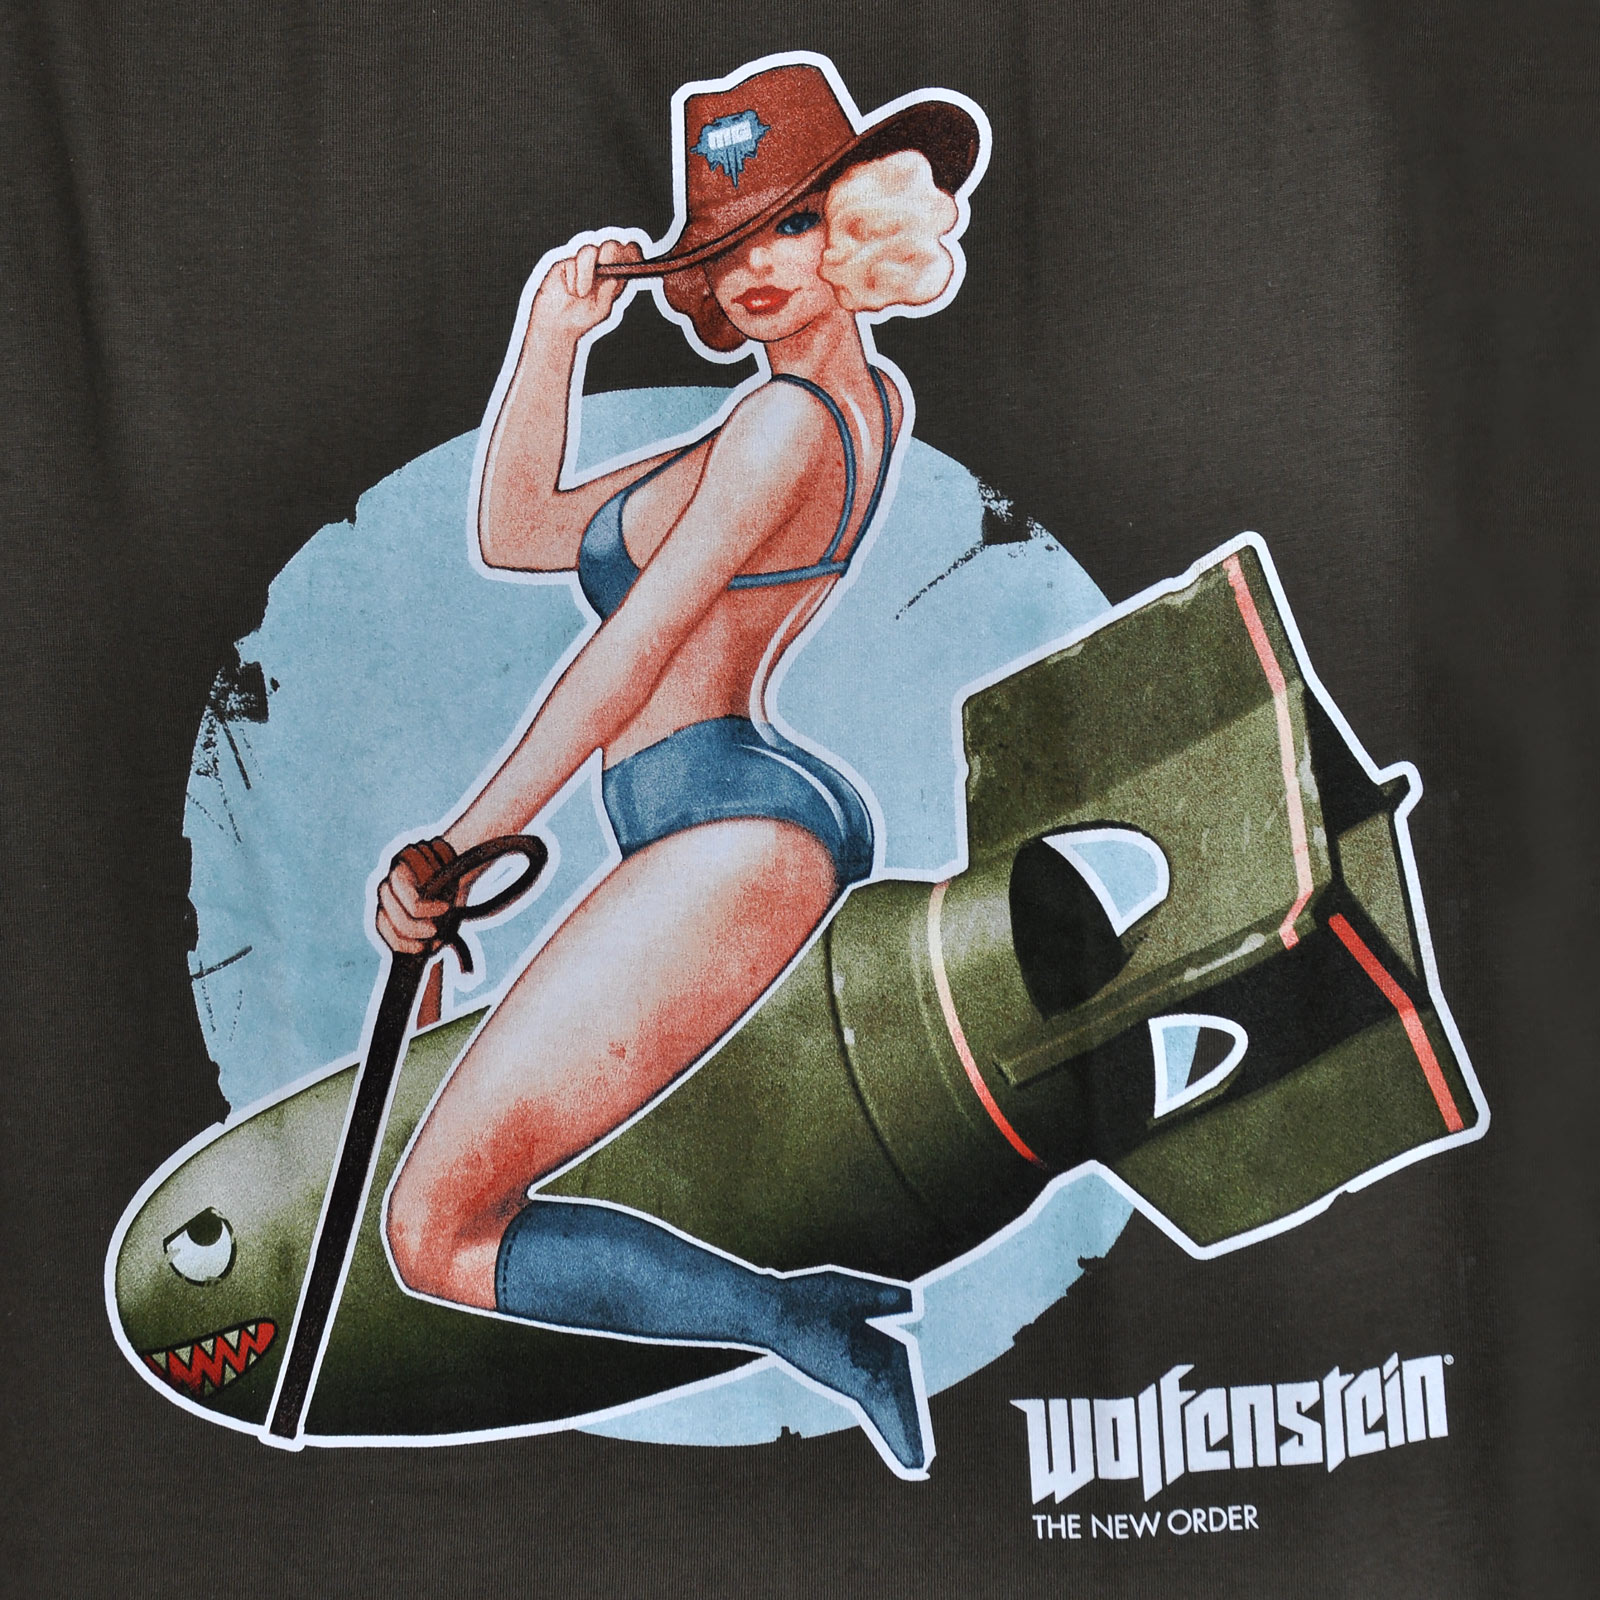 Wolfenstein - T-shirt Pin-Up